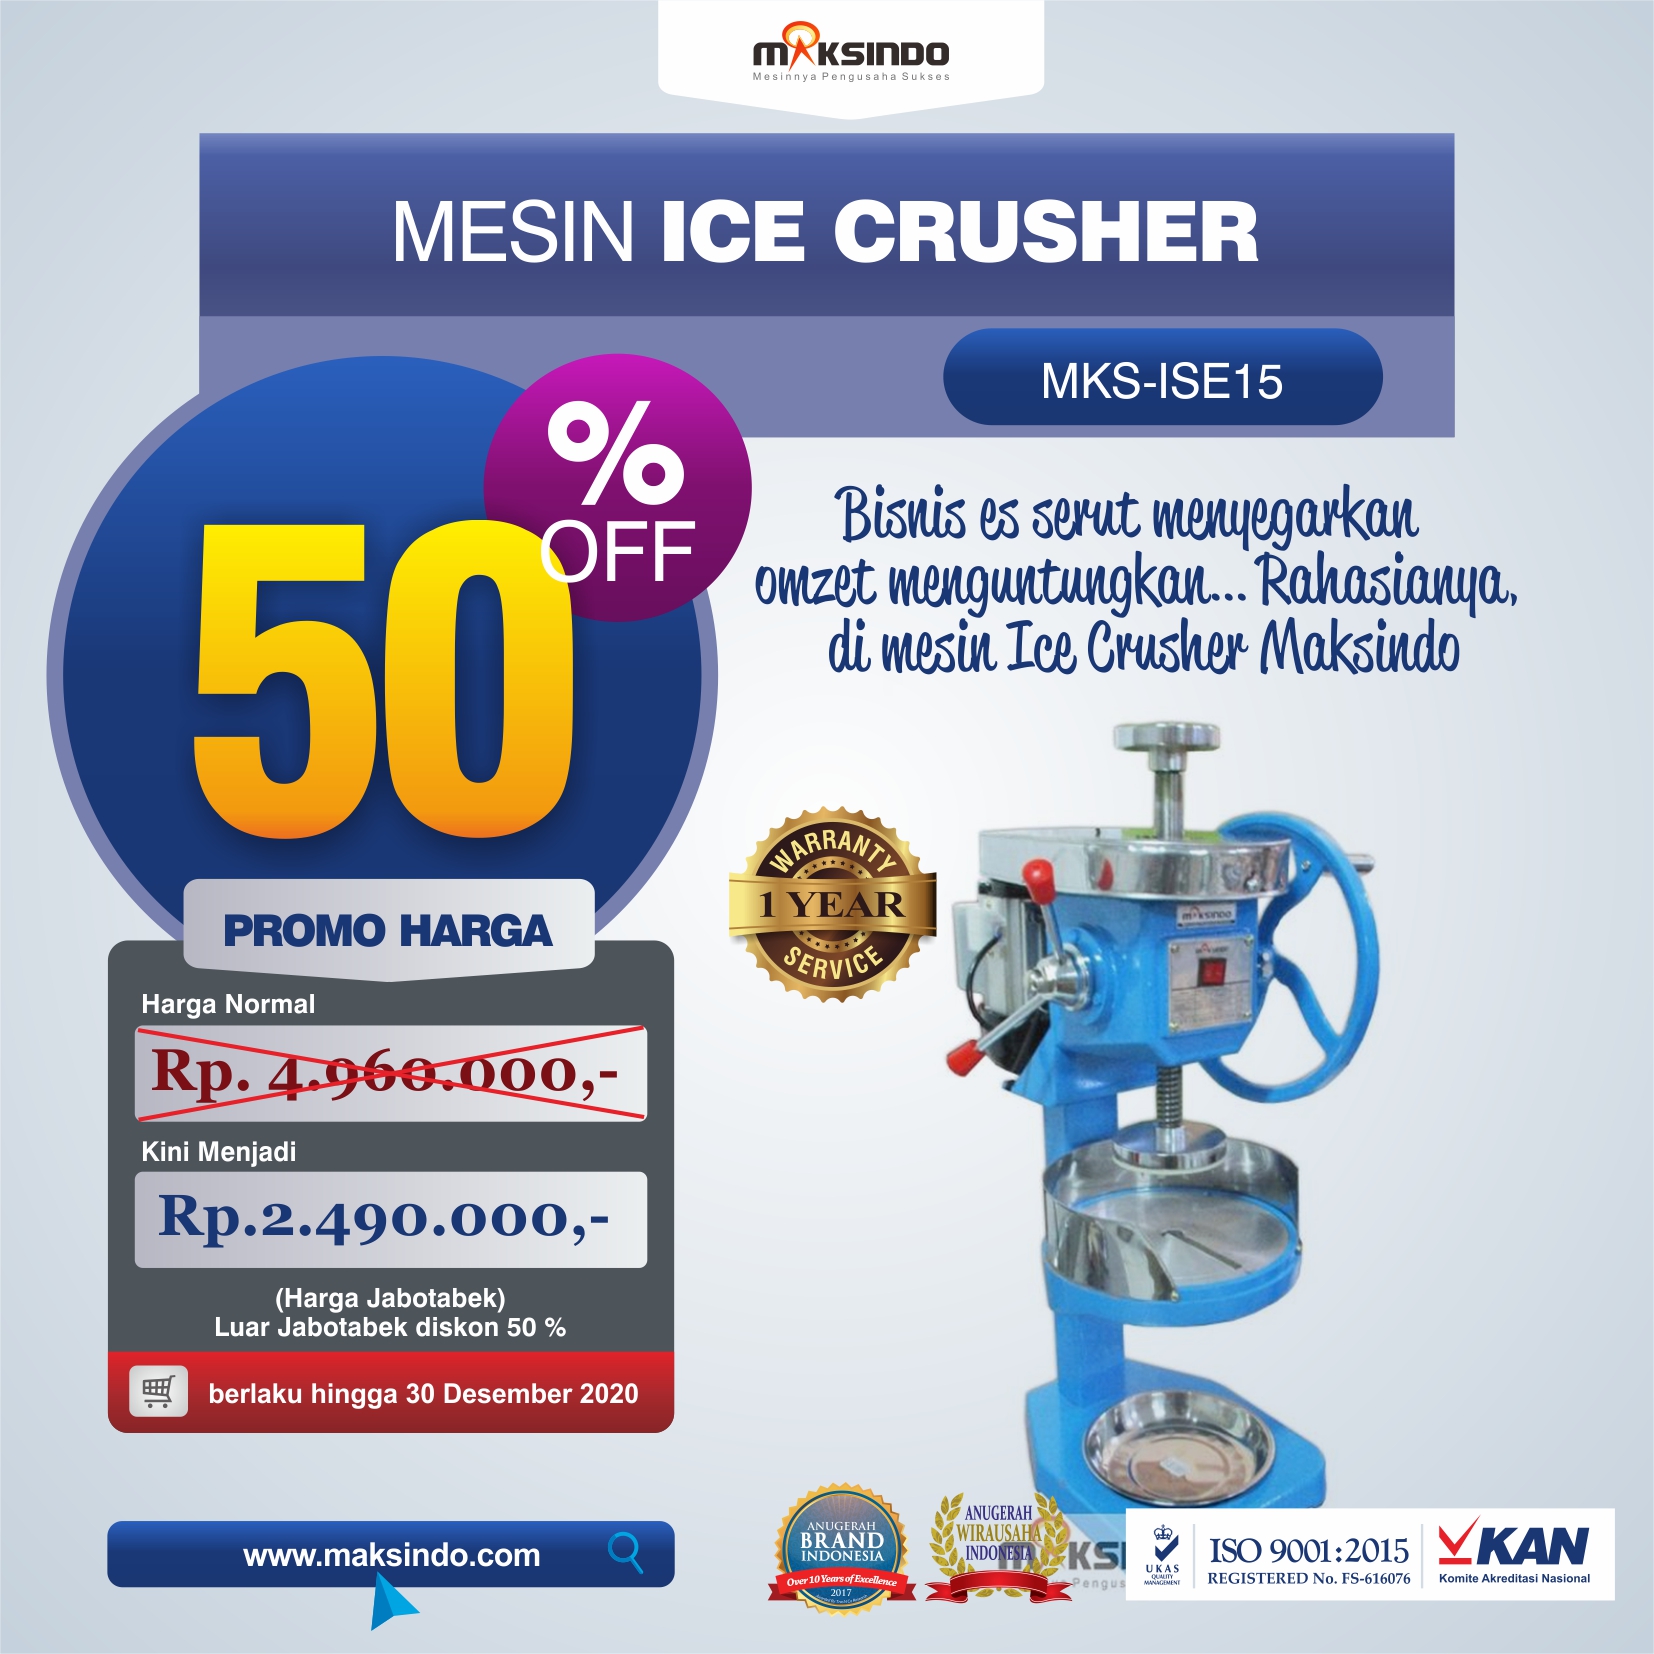 Jual Mesin Ice Crusher MKS-ISE15 di Malang